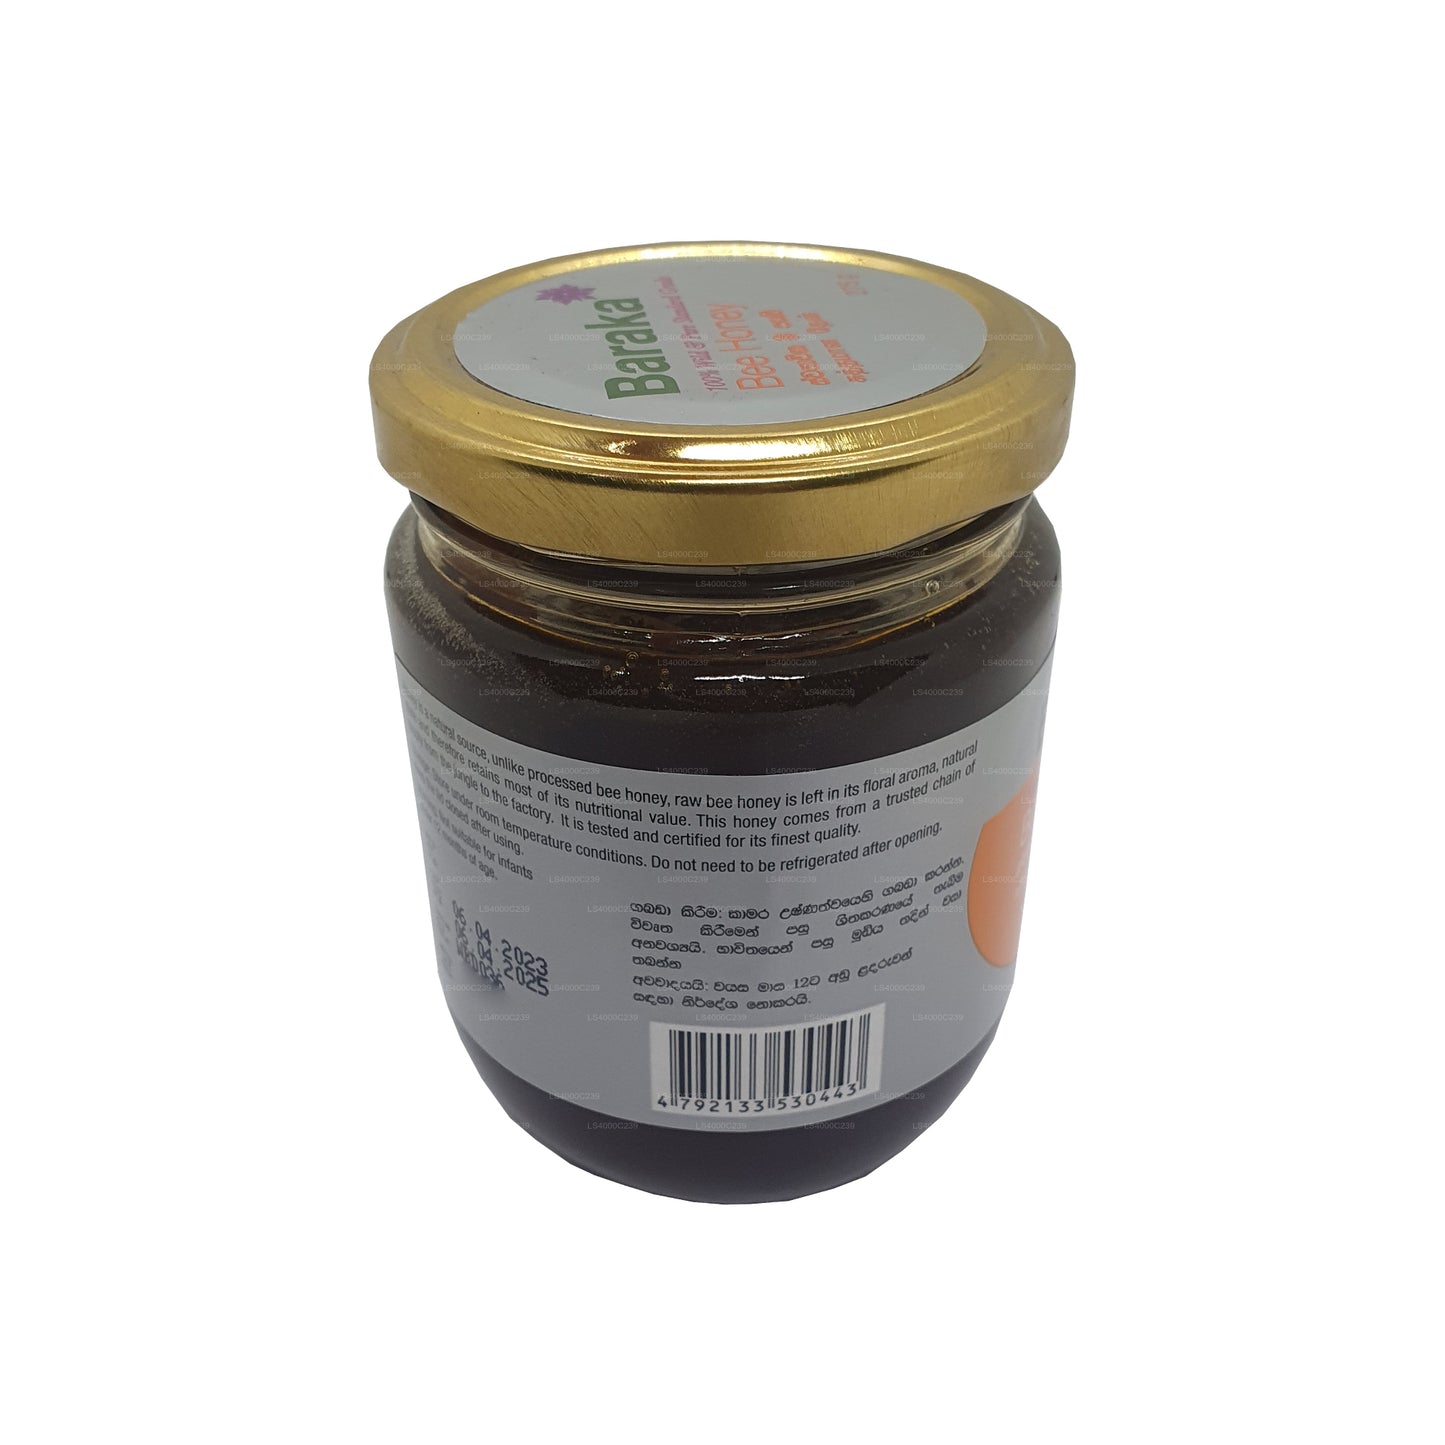 Baraka Wild & Pure Bee Honey (275g)